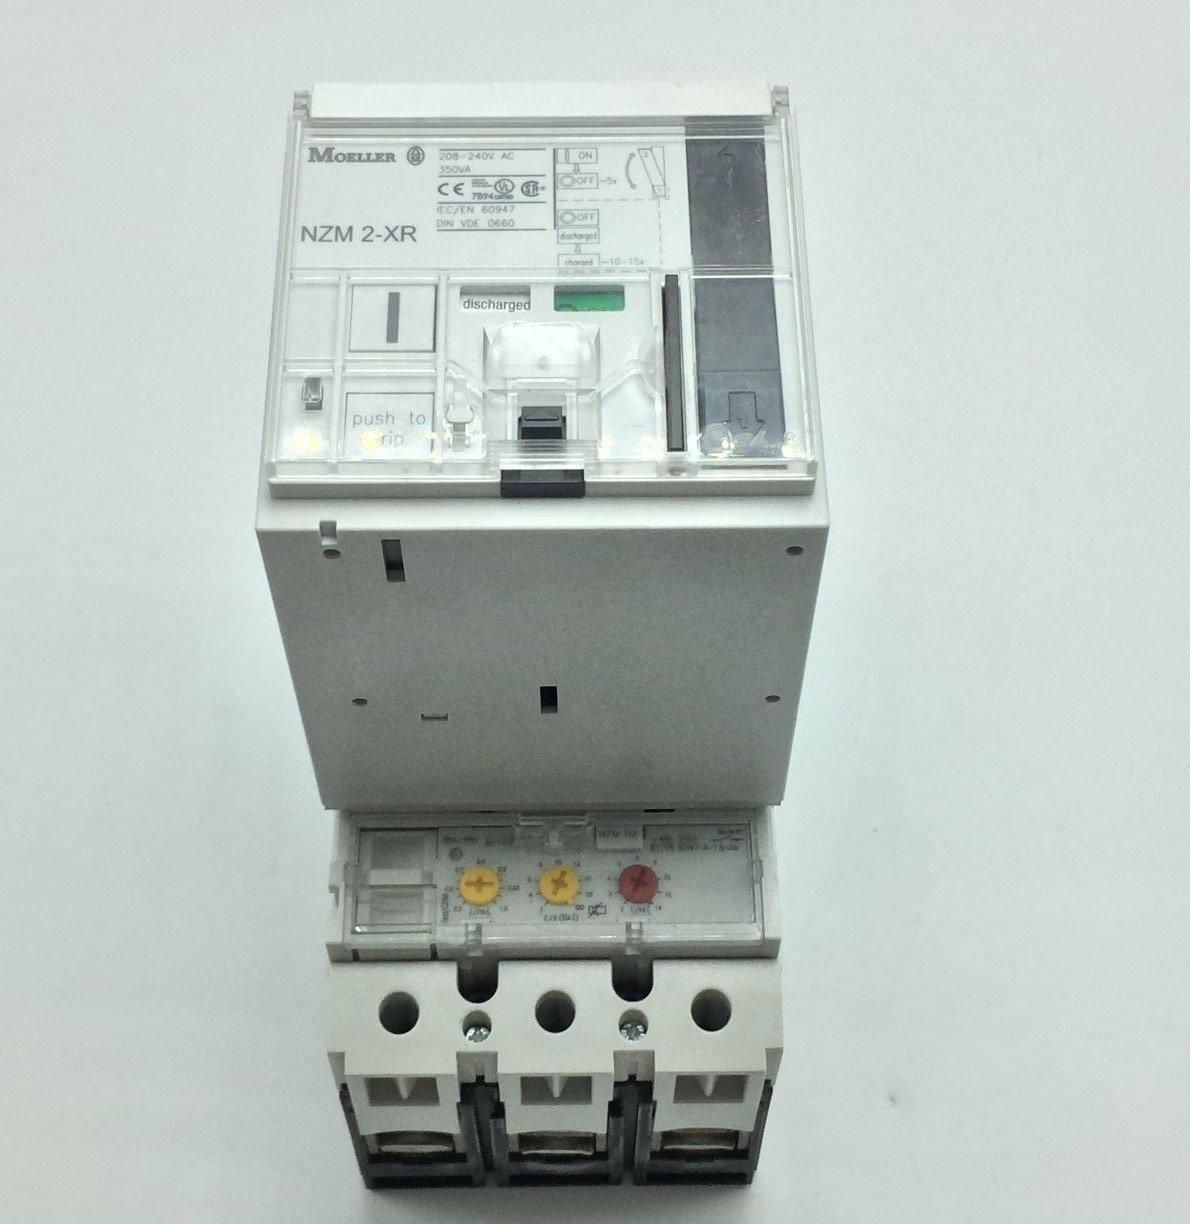 Moeller NZMH2-ME220 Circuit Breaker W/NZM2-XR208-240AC Remote Operator  - $814.00